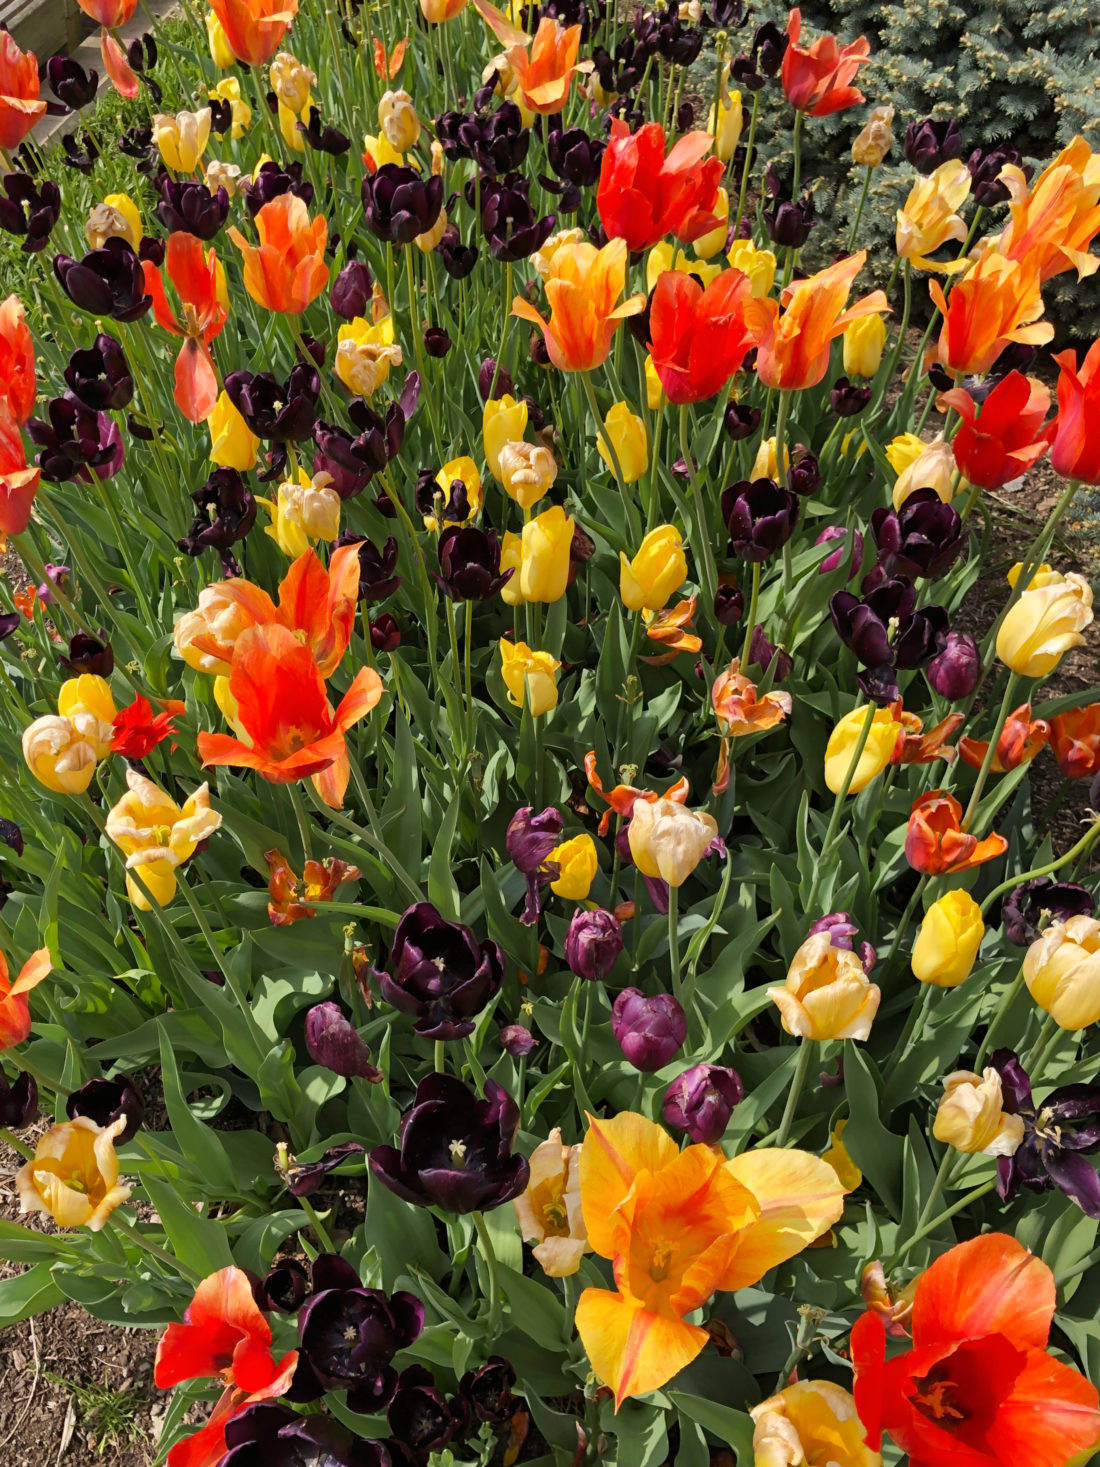 red, yellow and dark purple tulips